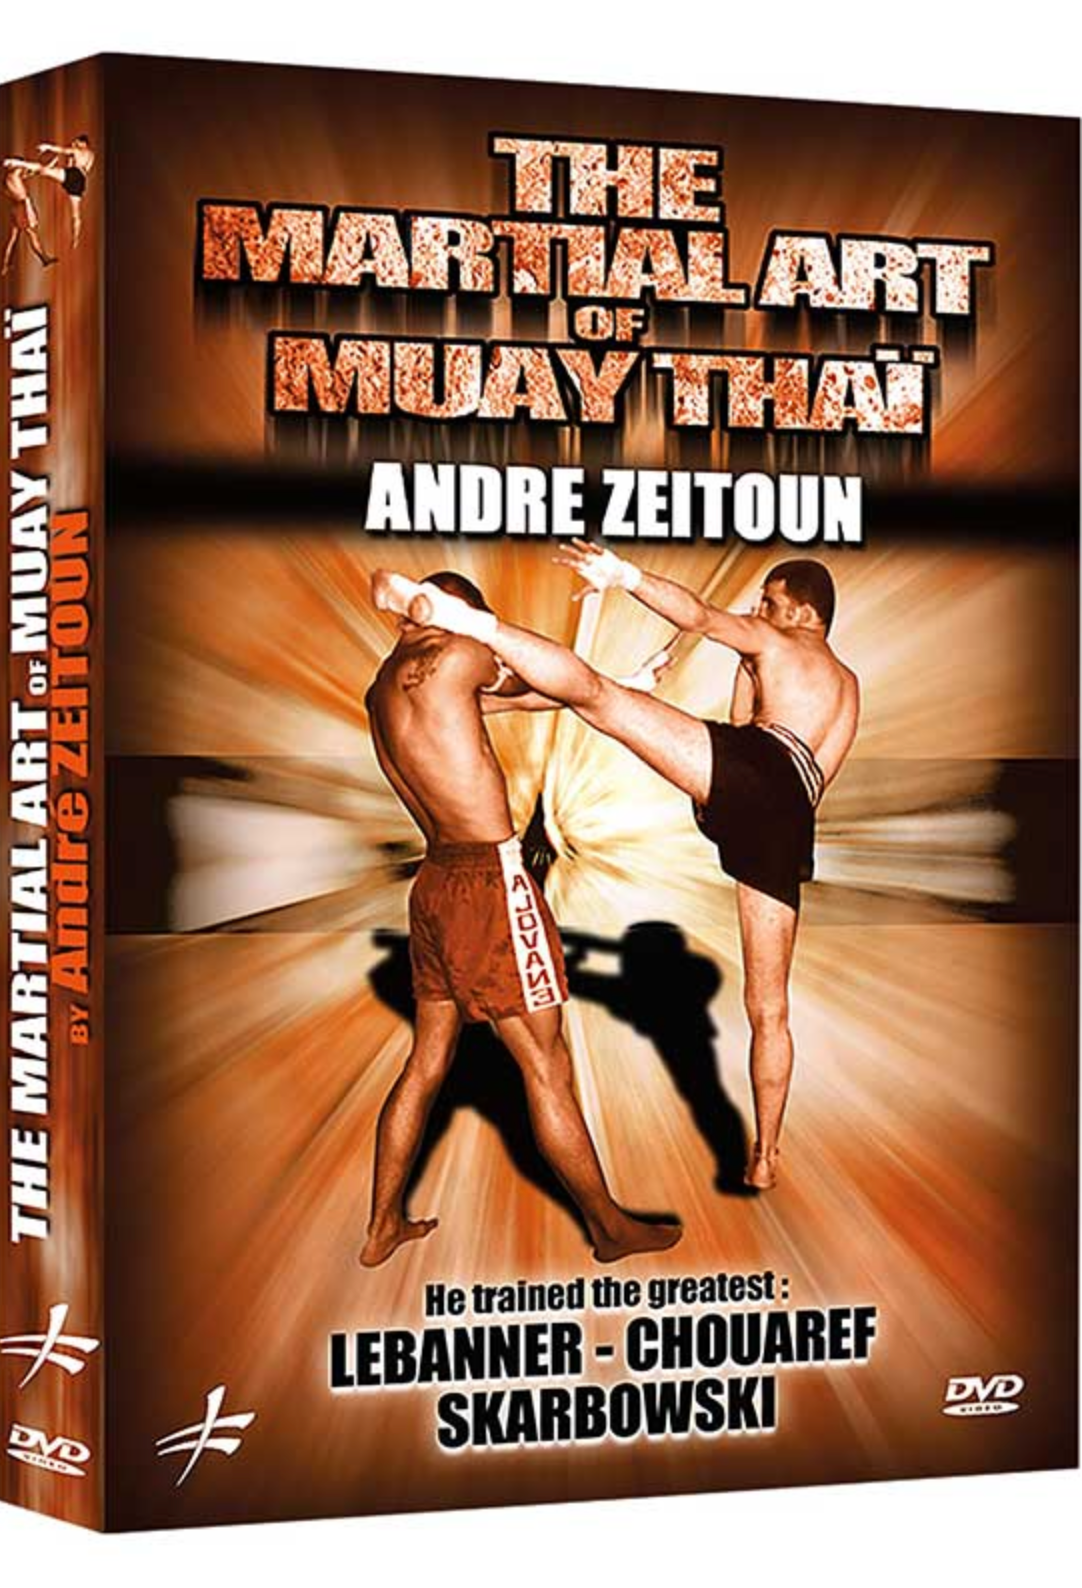 El arte marcial del Muay Thai DVD de Andre Zeitoun